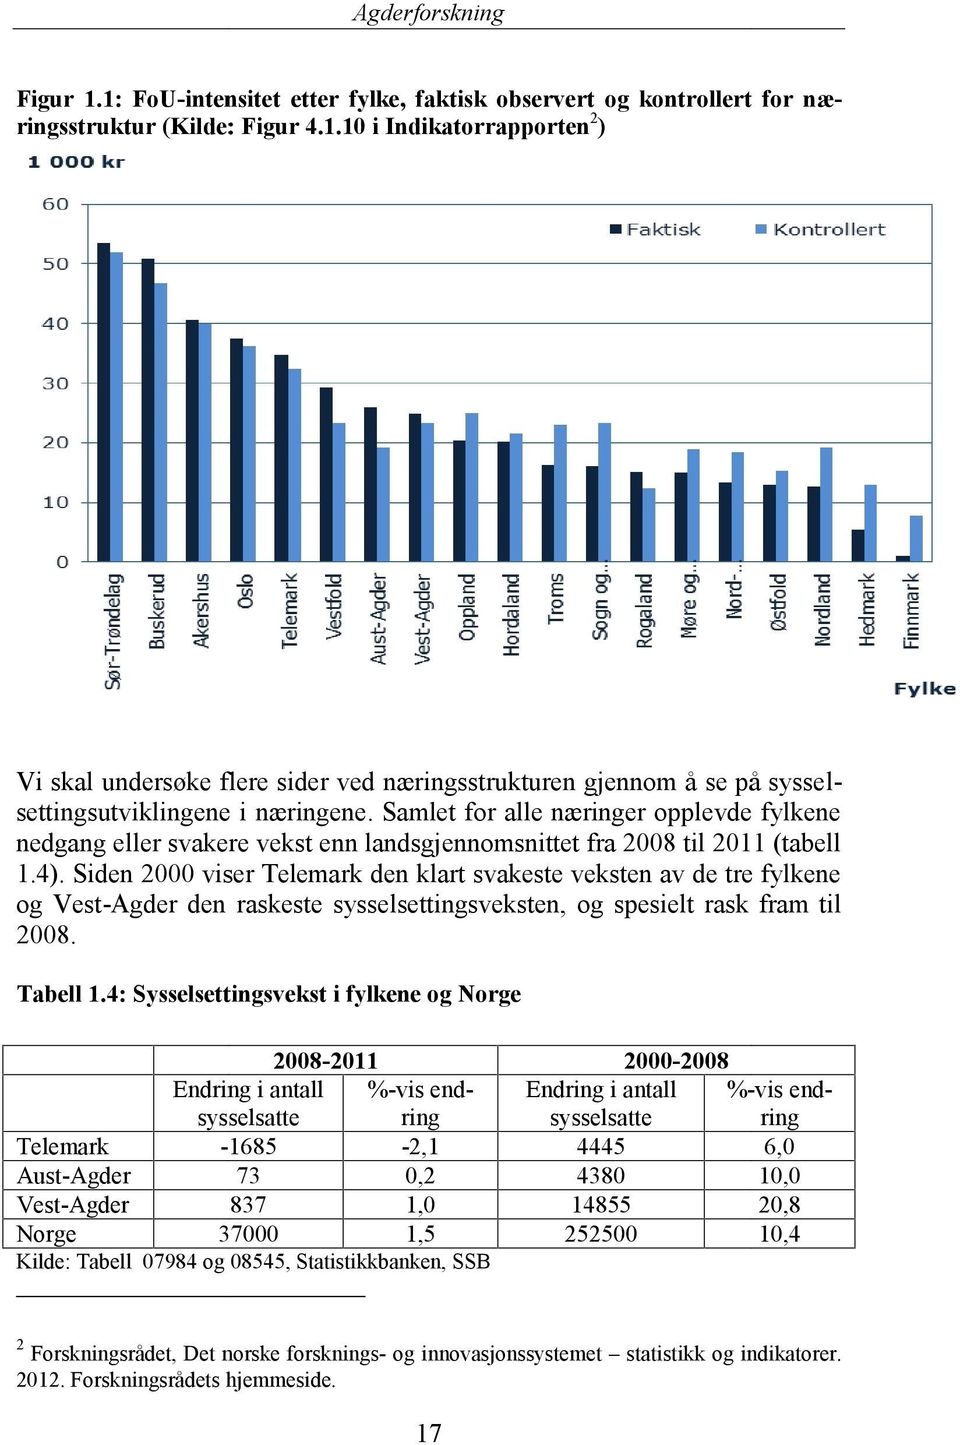 Siden 2000 viser Telemark den klart svakeste veksten av de tre fylkene og Vest-Agder den raskeste sysselsettingsveksten, og spesielt rask fram til 2008. Tabell 1.